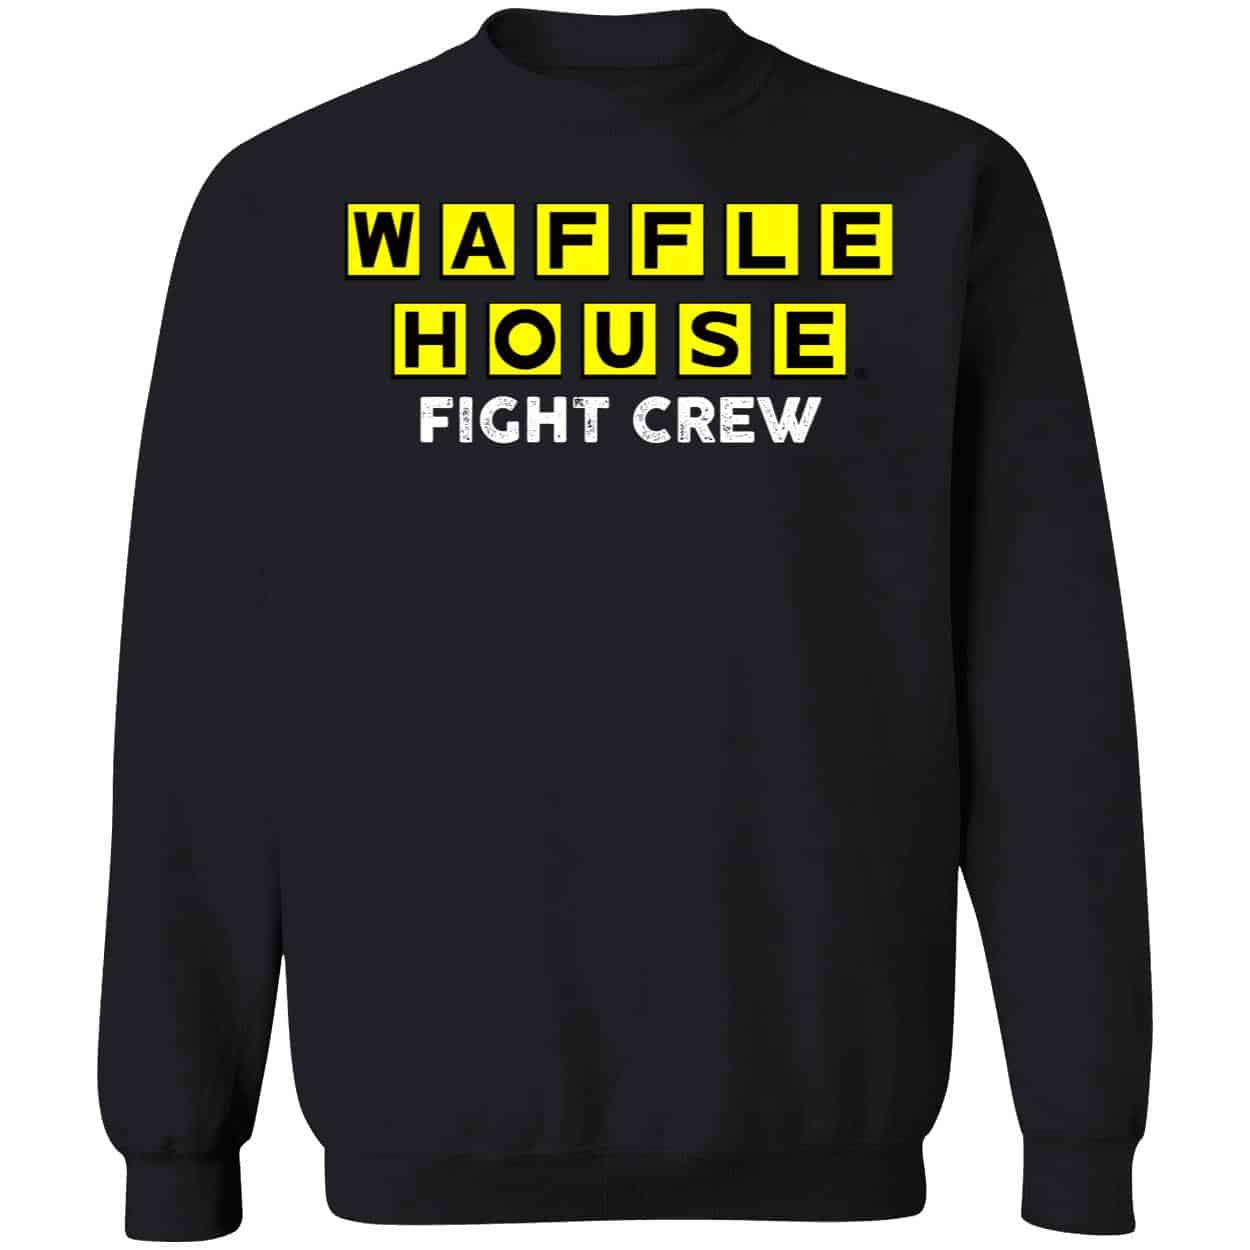 Endastore Waffle House Fight Crew Shirt